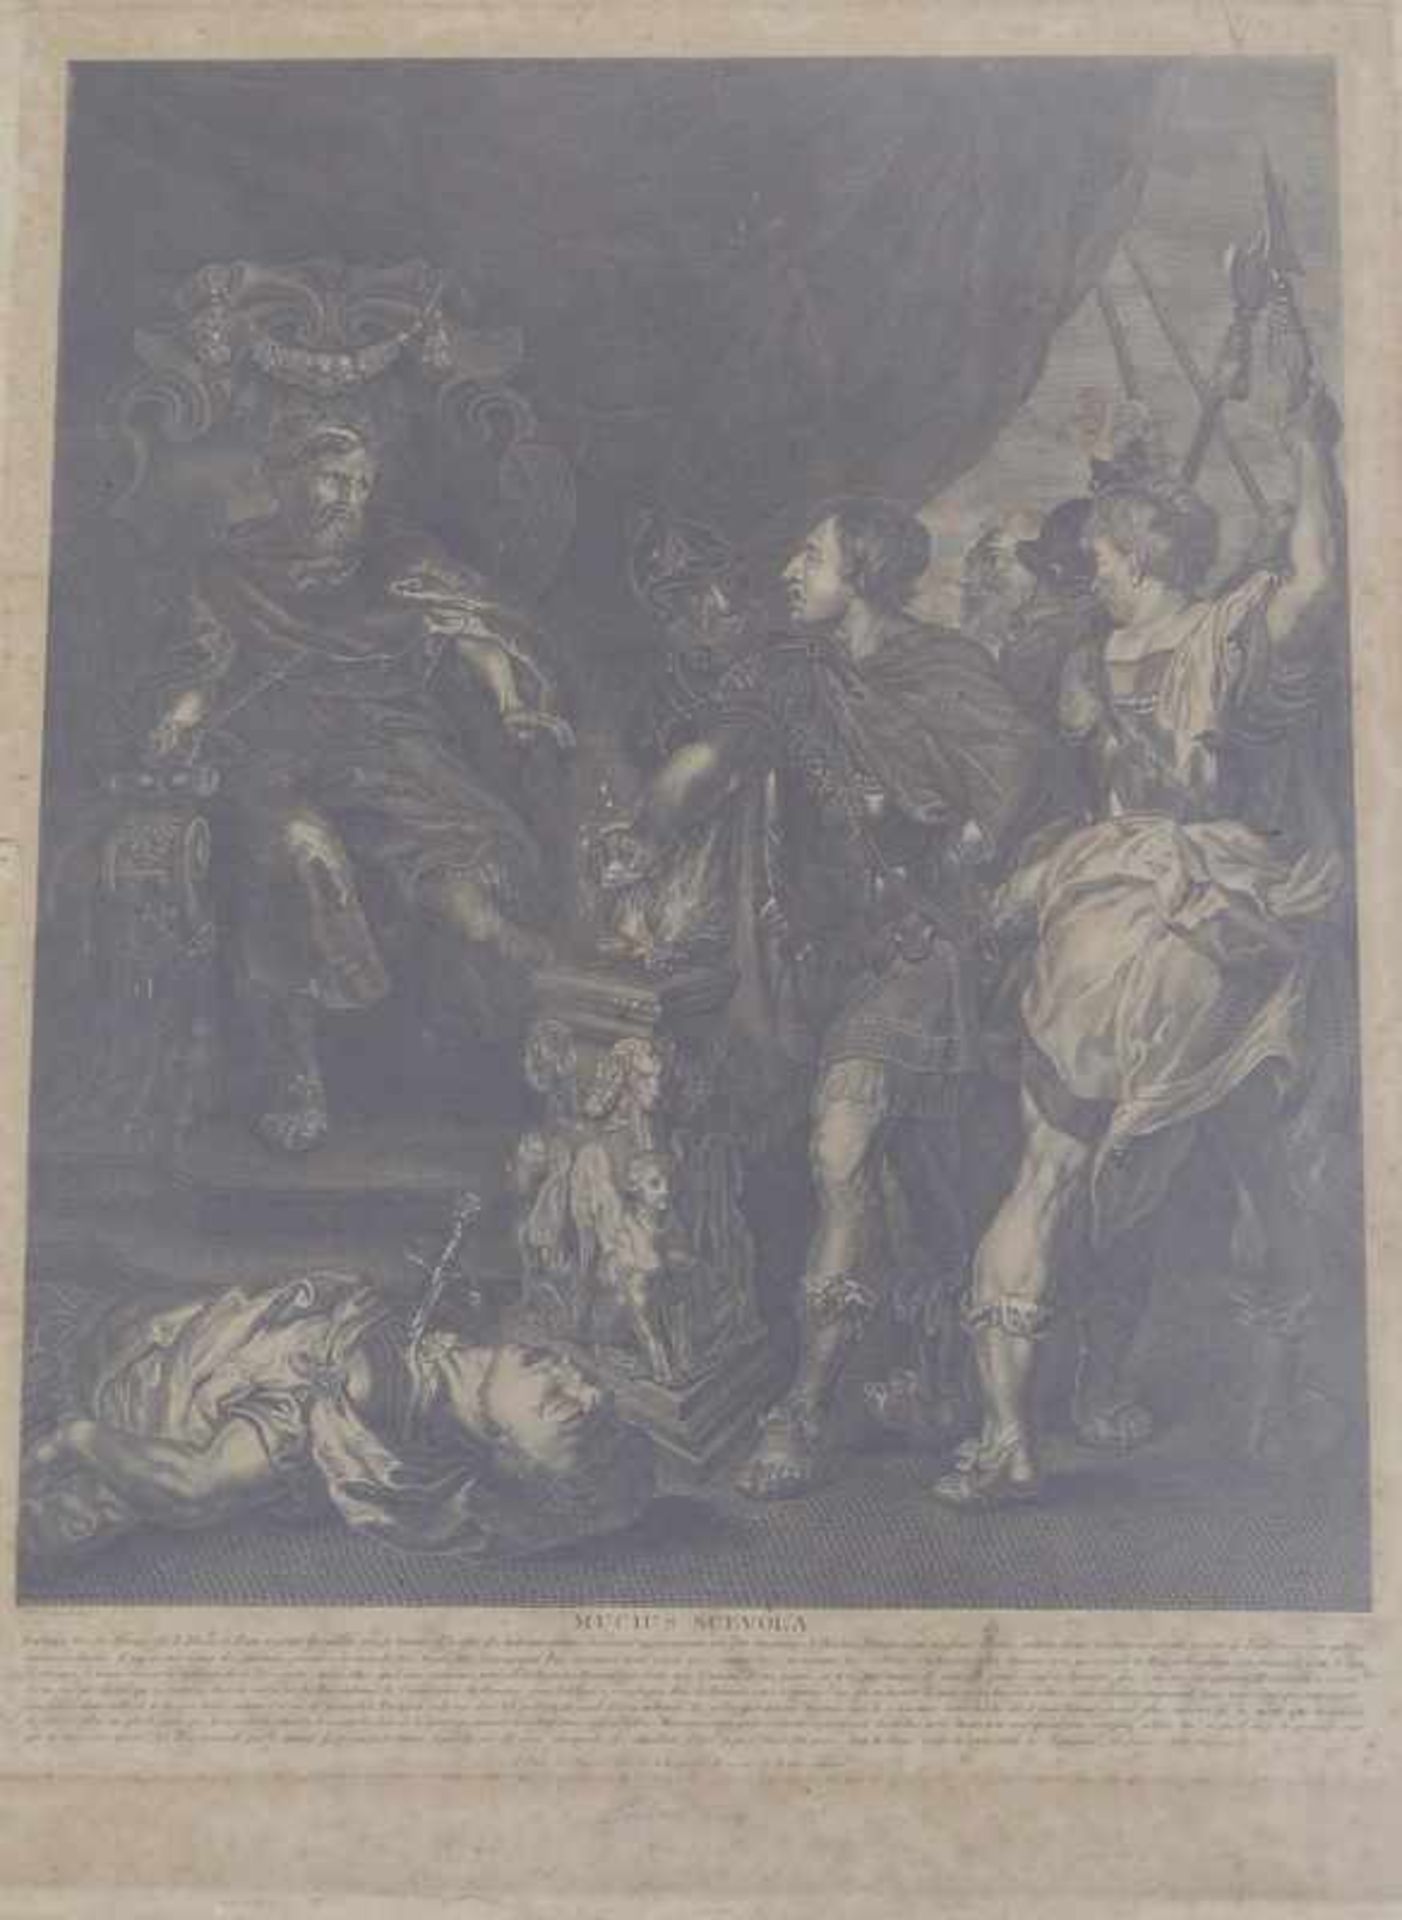 Rubens, Peter Paul, nach (1577 Siegen - 1640 Antwerpen): "Mucius Scevola" Großer Kupferstich auf